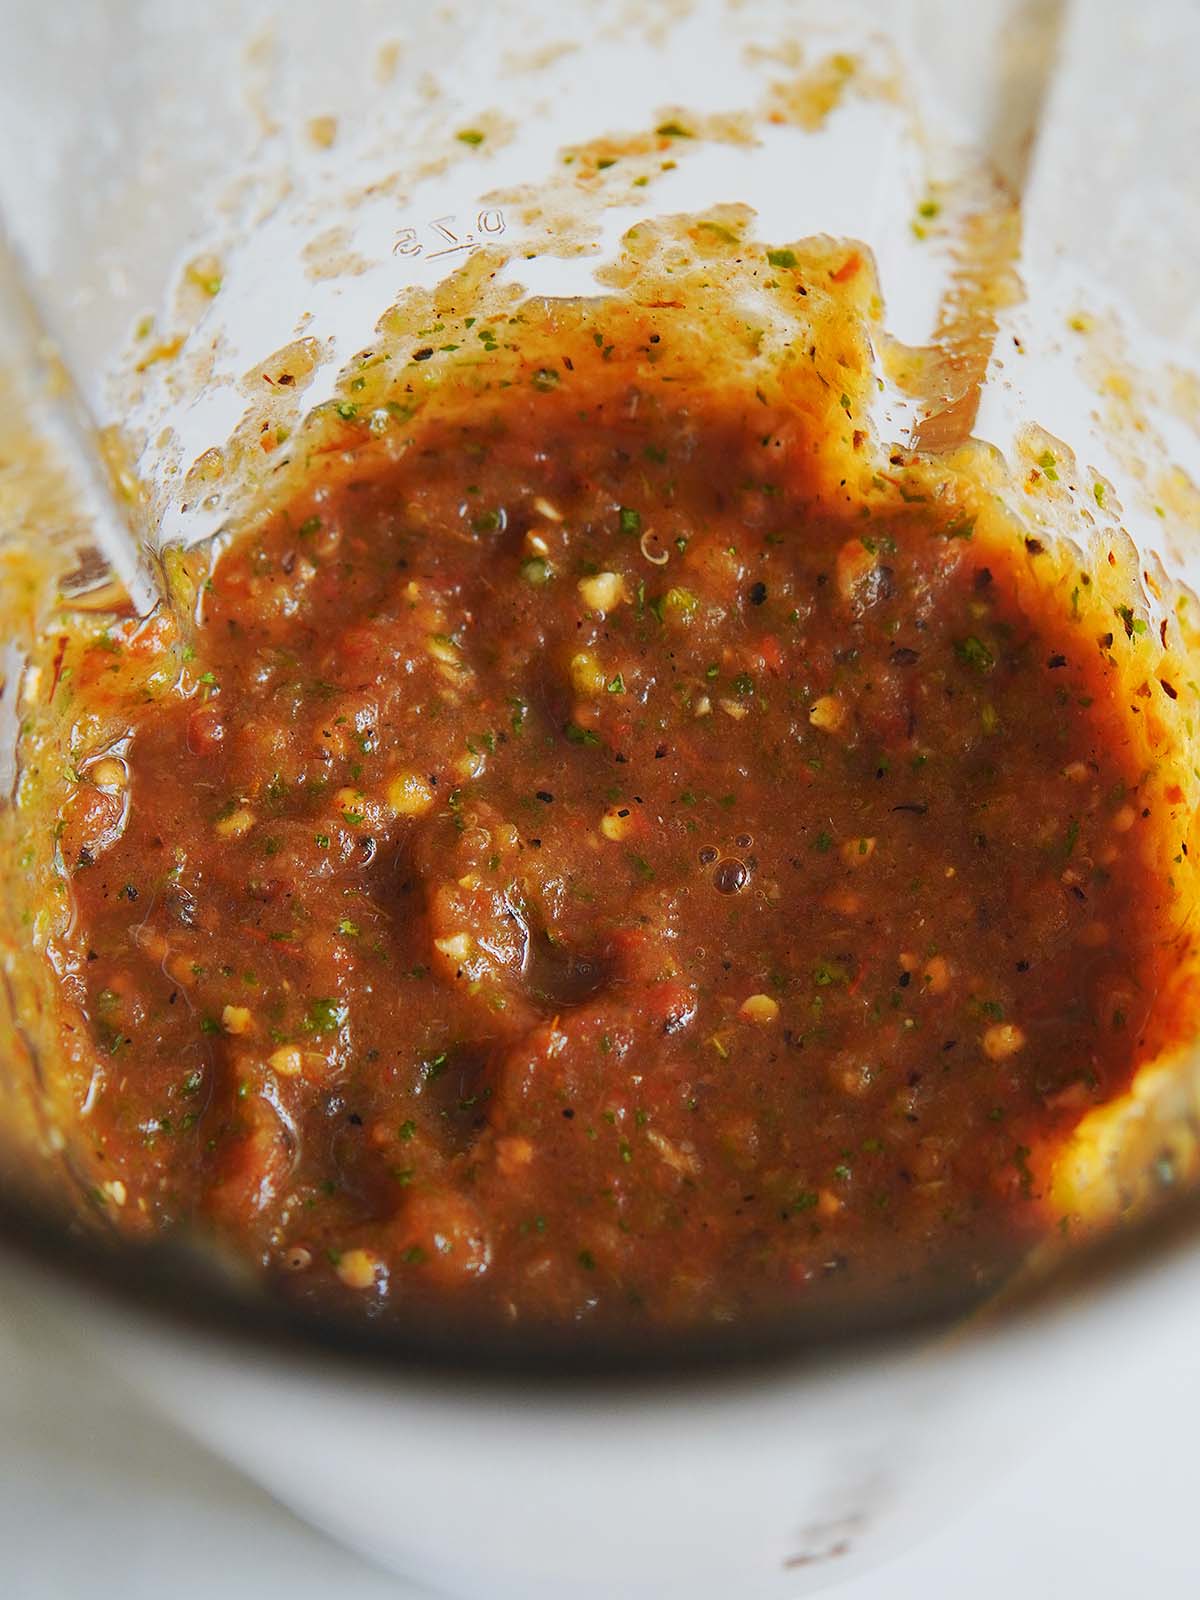 Freshly blended salsa in a blender's cup.